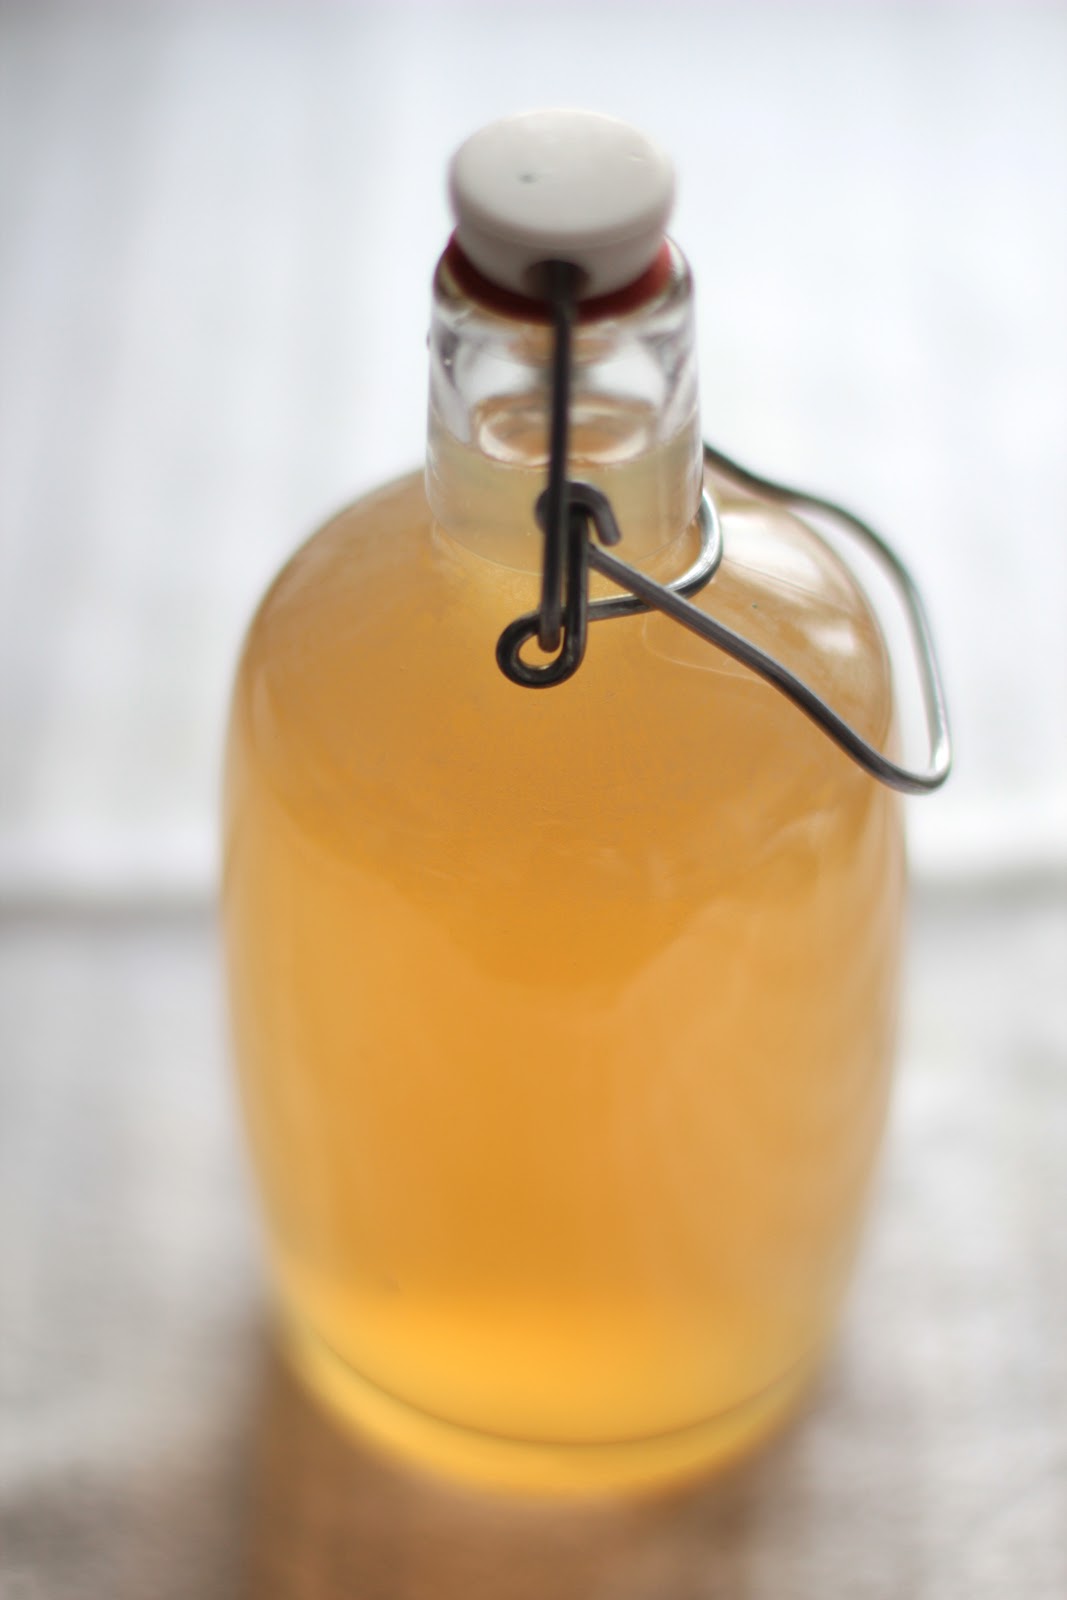 bake your slovak roots / slovenské korene: Elderflower Syrup - Cordial ...